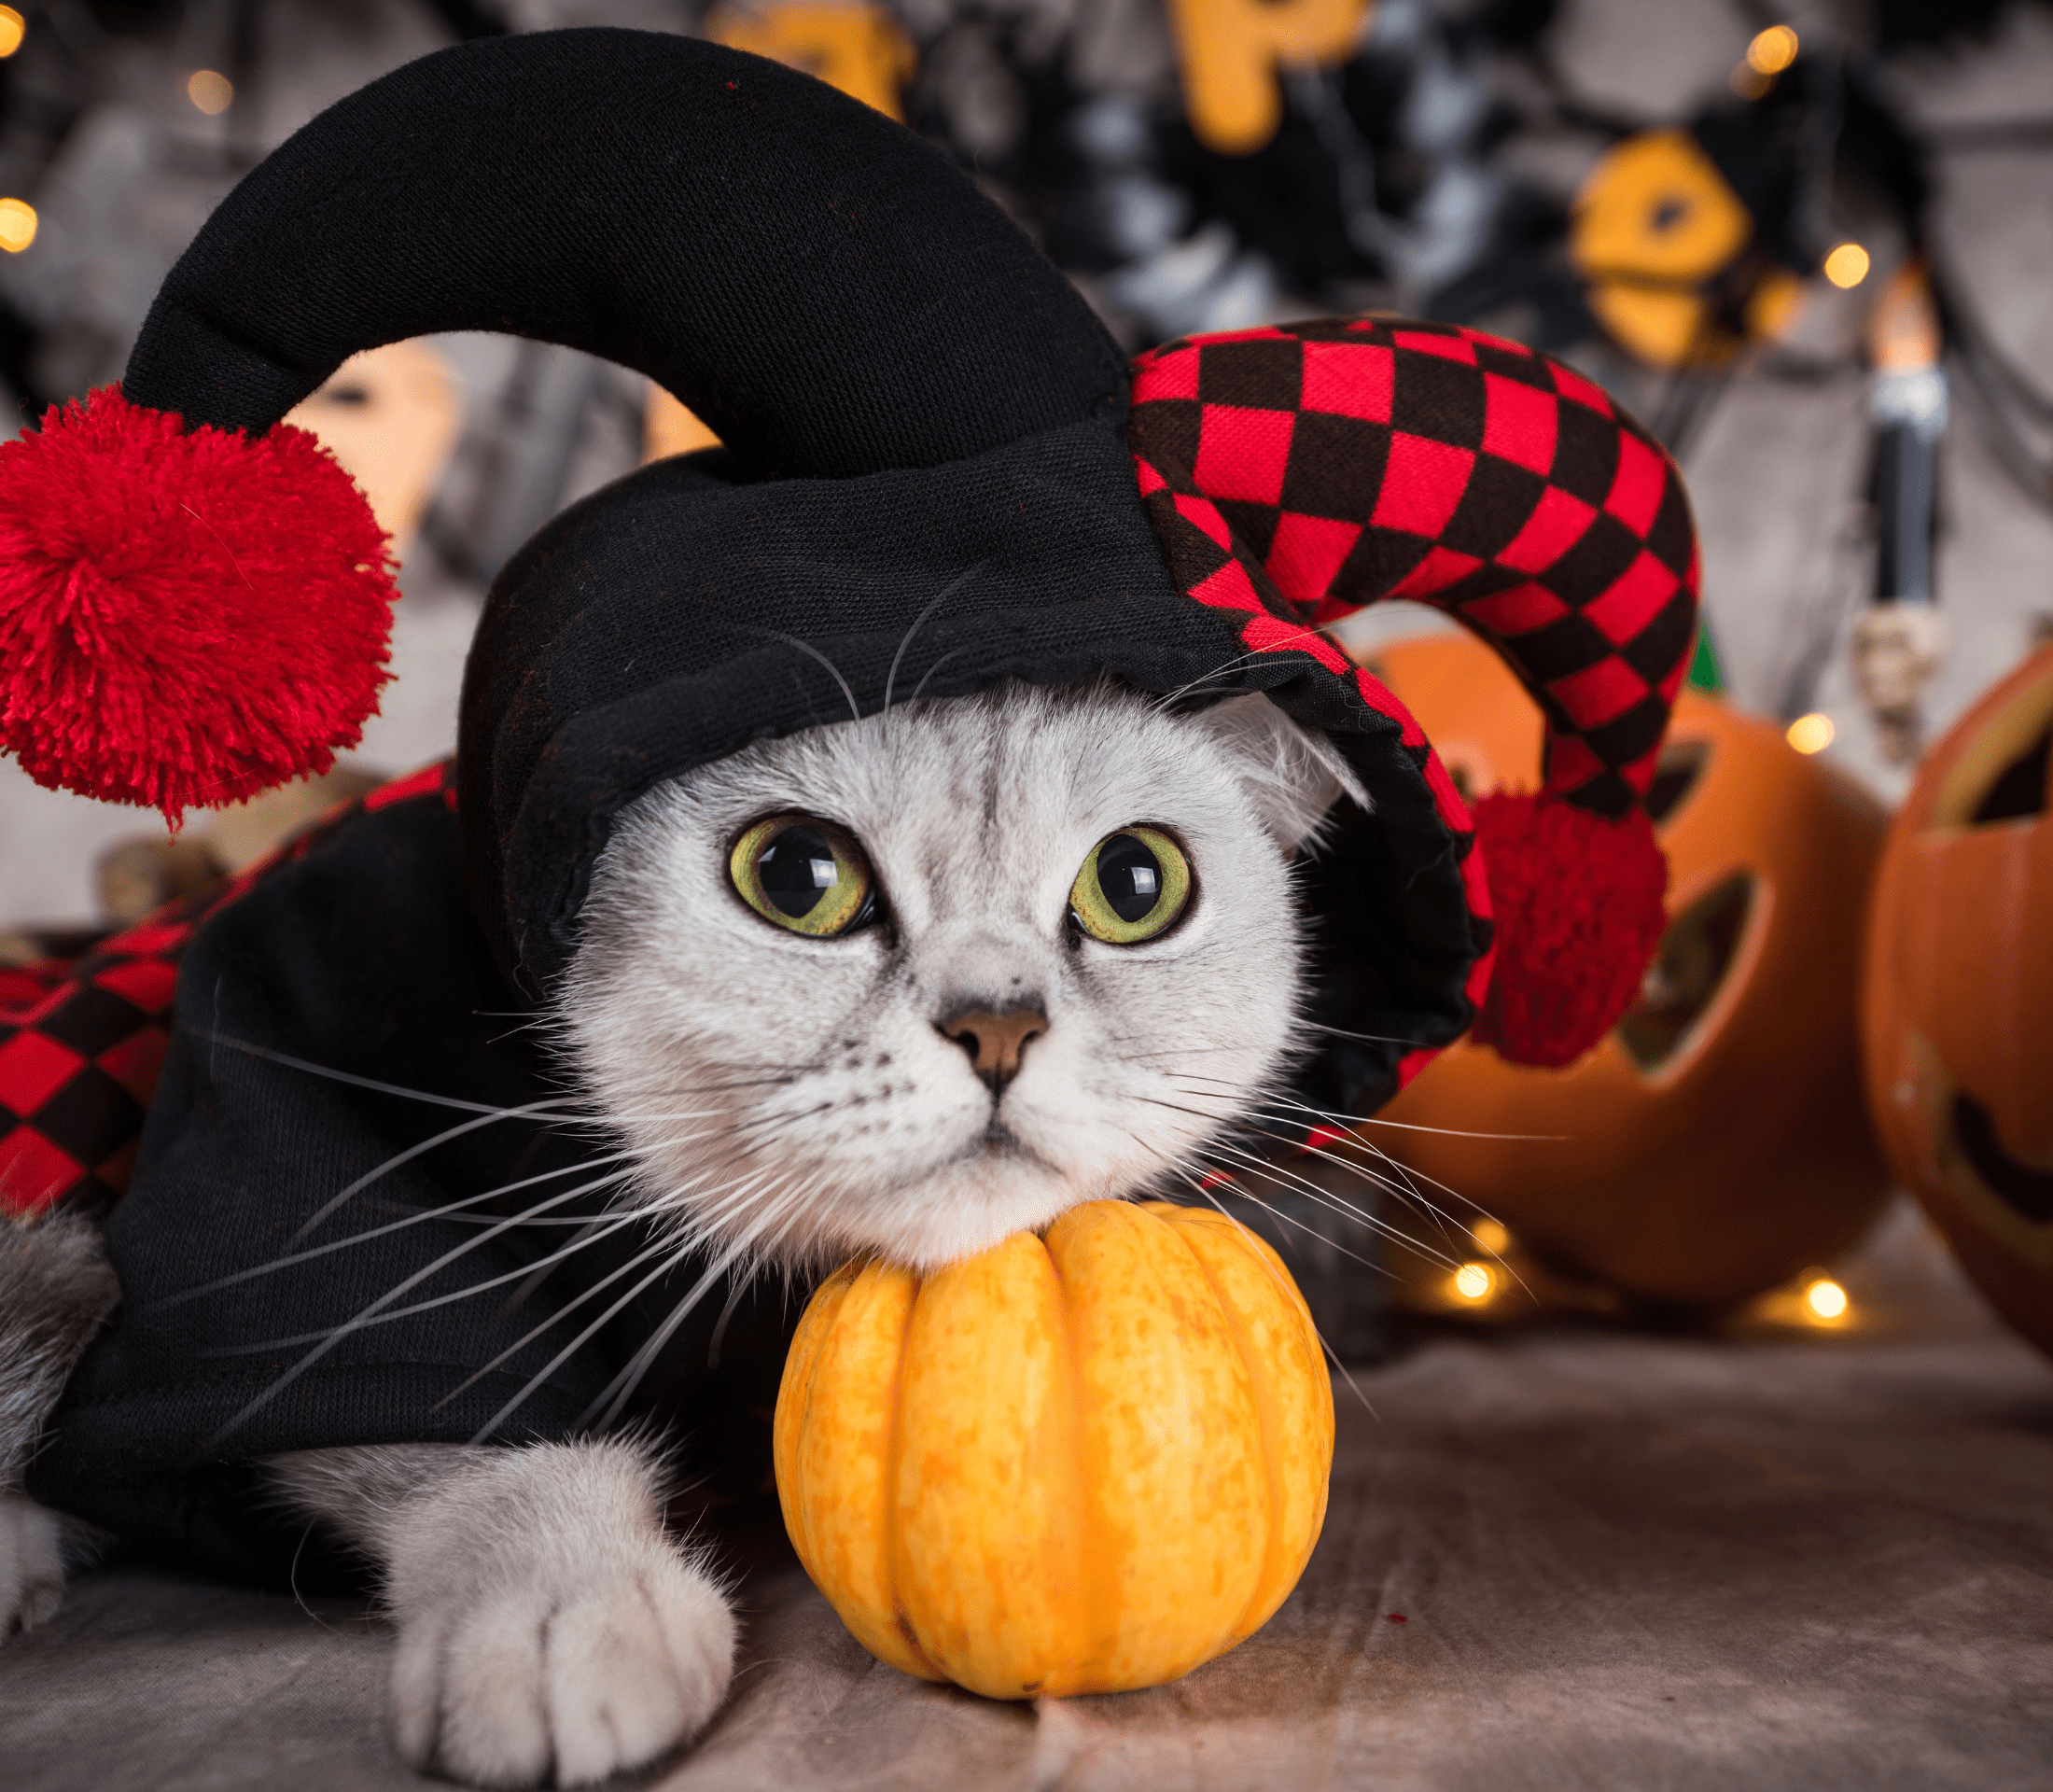 Kitten wearing a joker costume with a pumpkin on the side